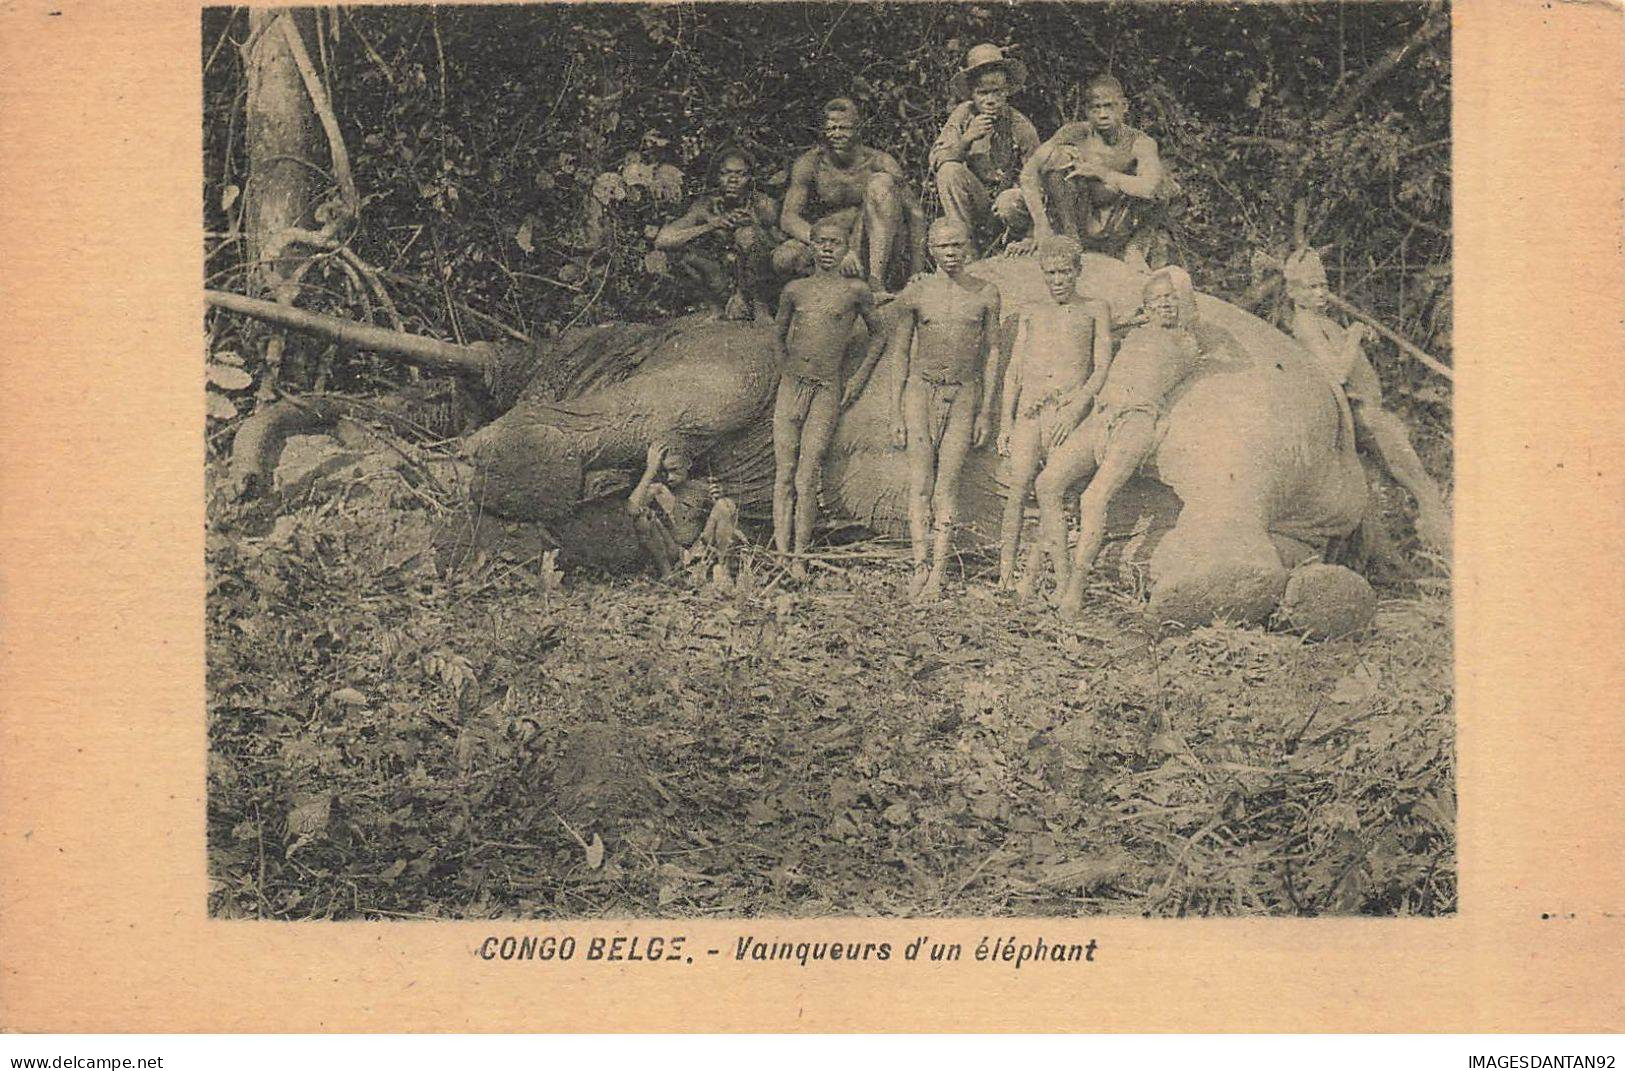 CONGO AD#MK015 CONGO BELGE VAINQUEURS D UN ELEPHANT CHASSE CHASSEURS - Belgian Congo